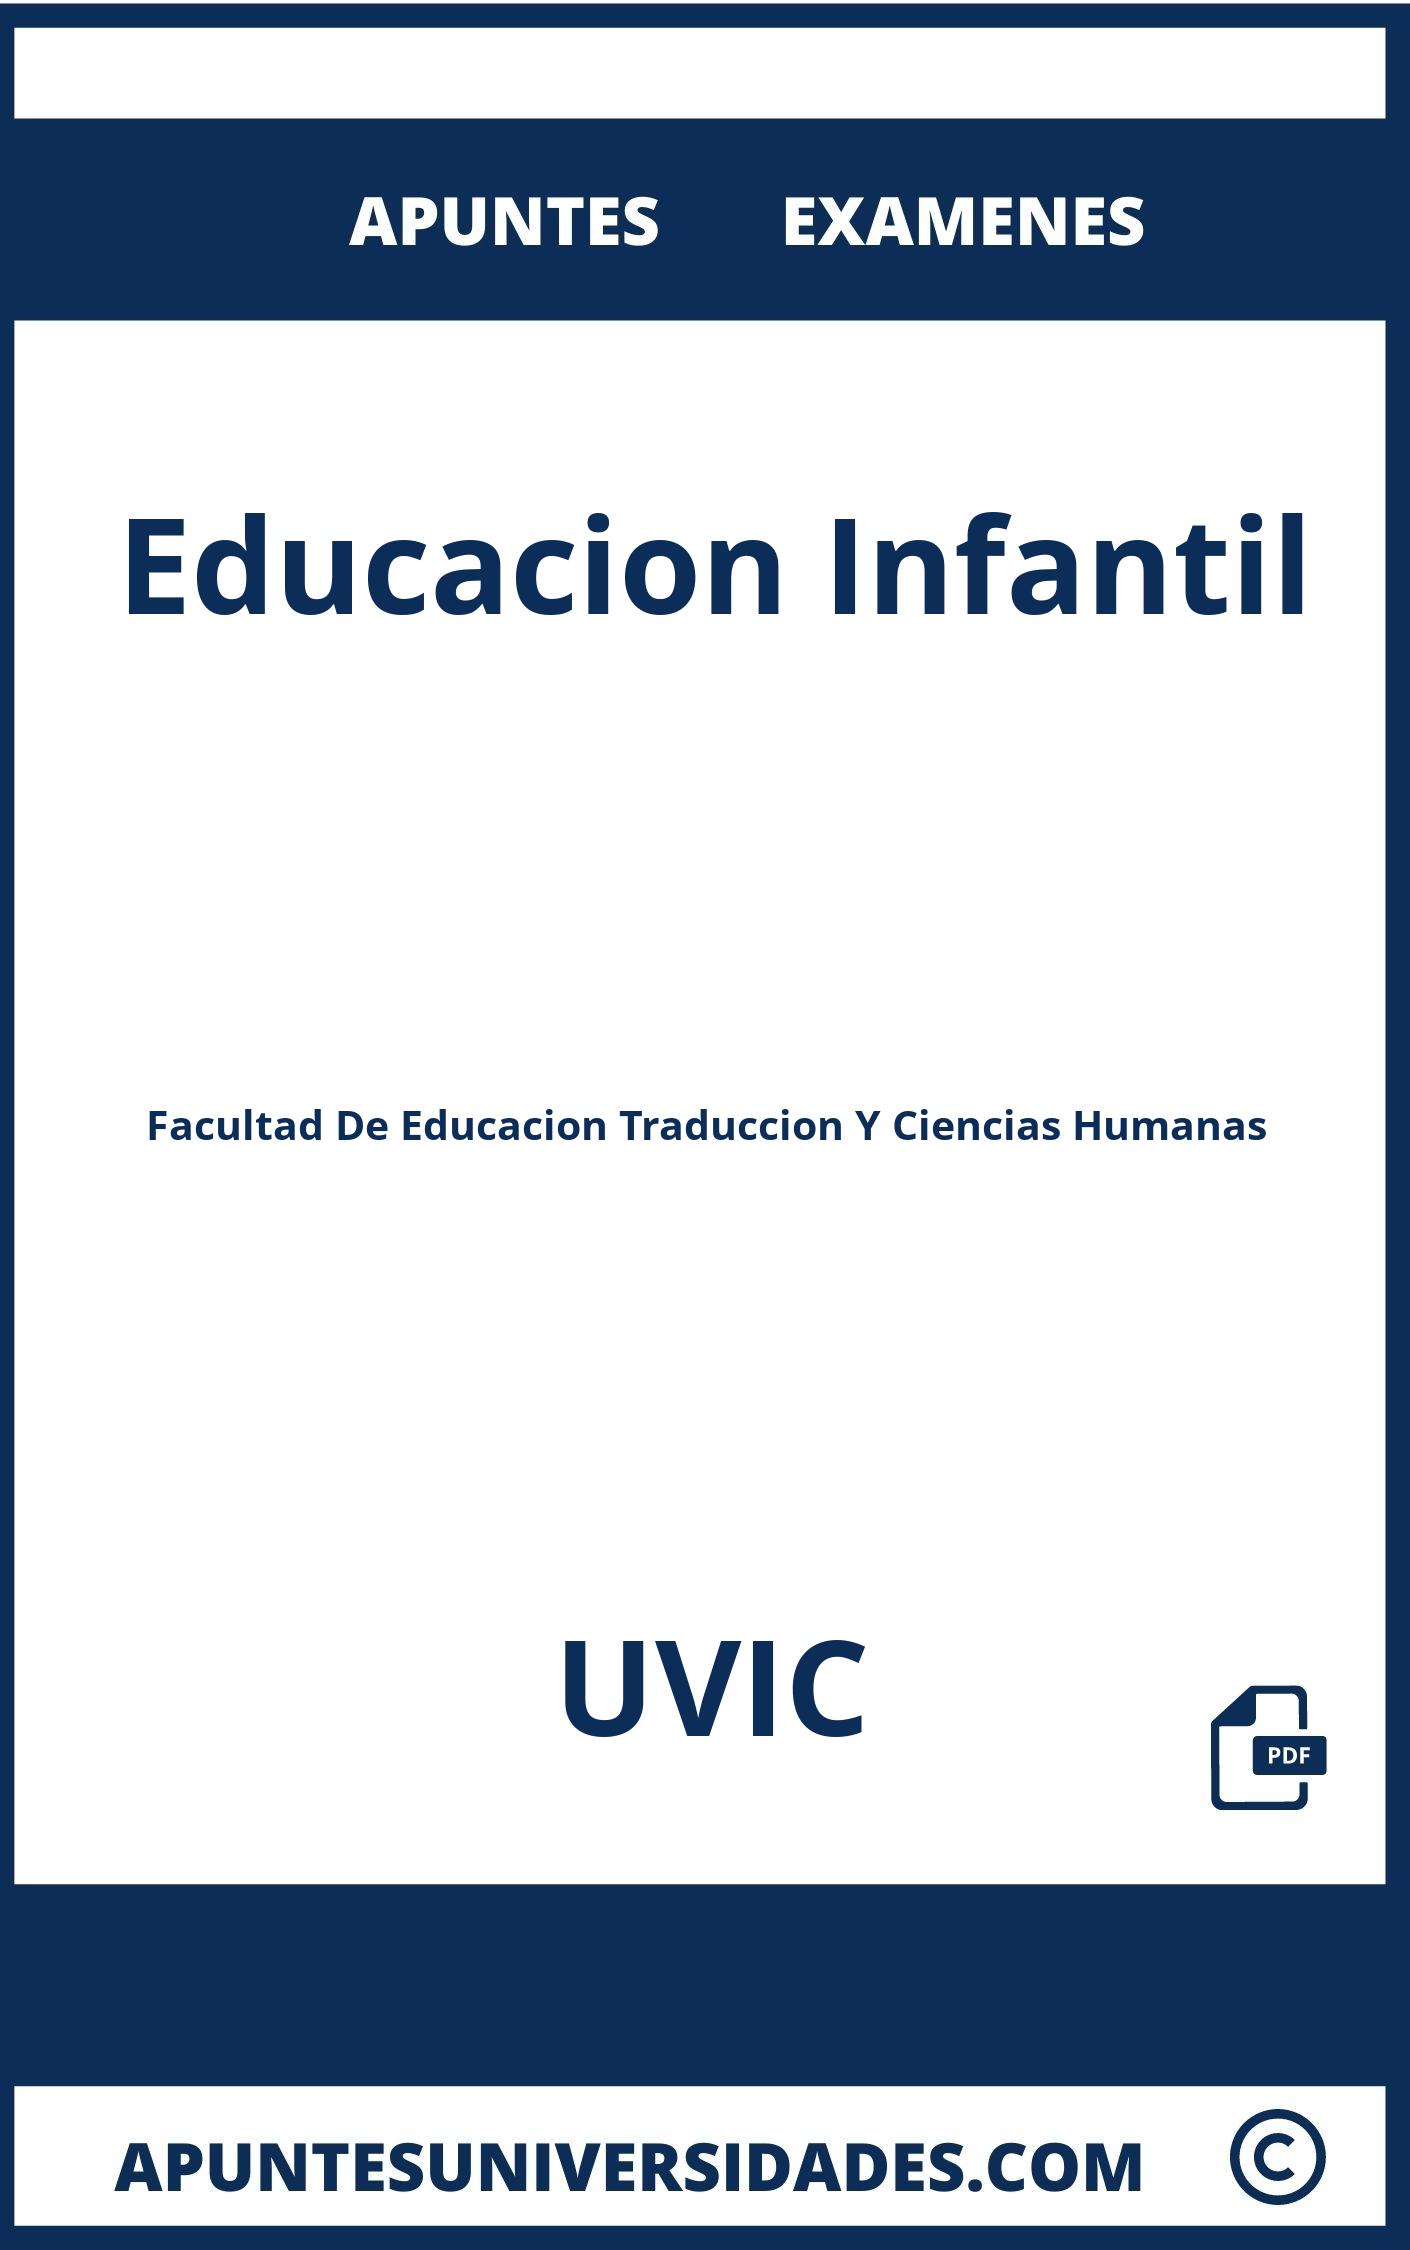 Educacion Infantil UVIC Examenes Apuntes